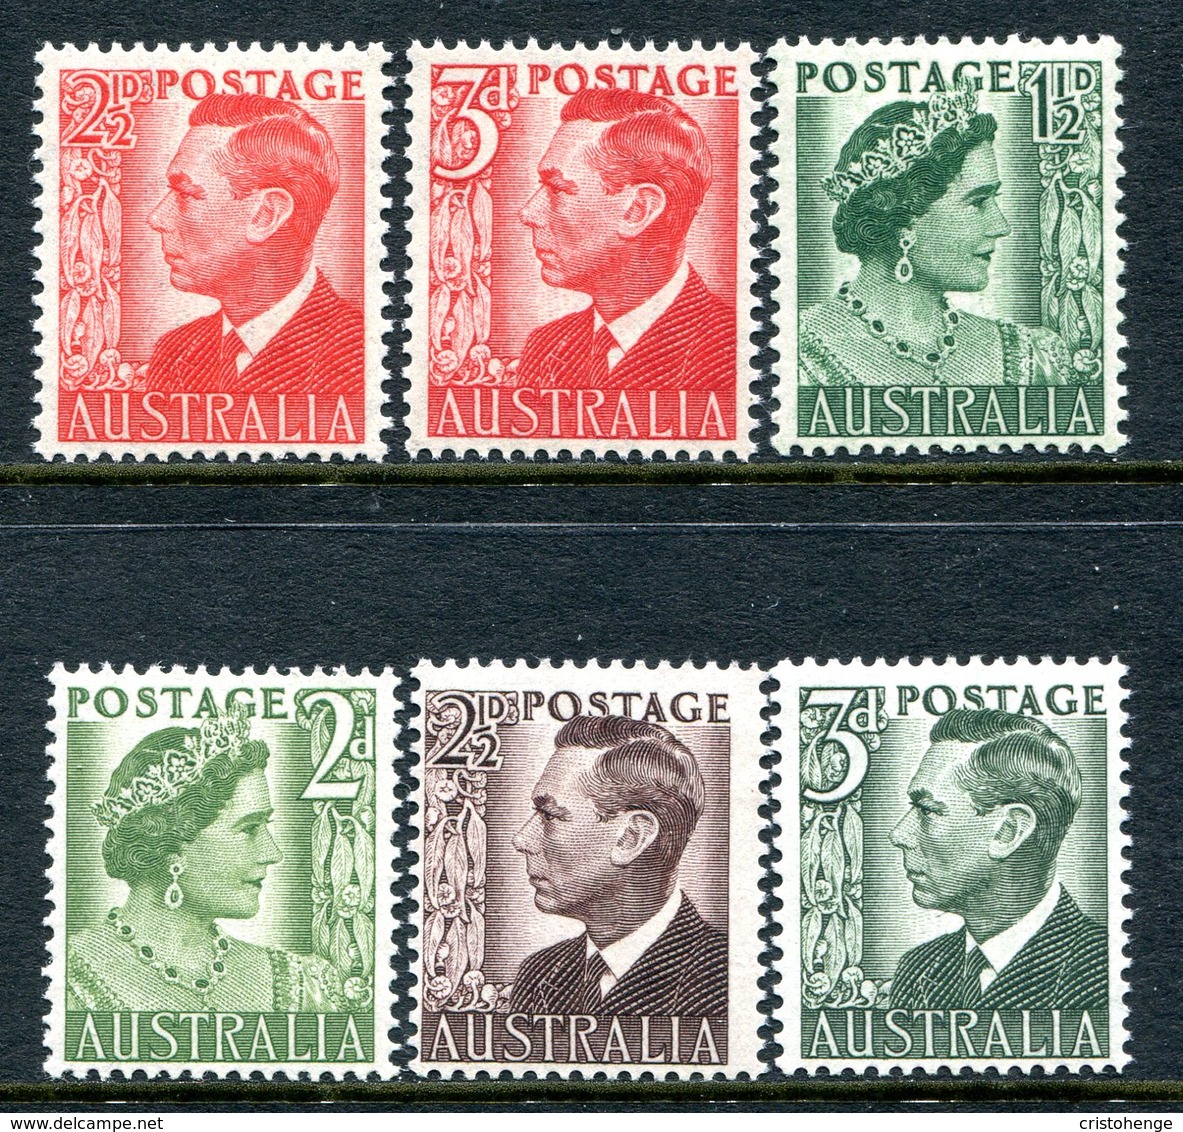 Australia 1950-52 KGVI Definitives Set HM (SG 234-237d) - Mint Stamps